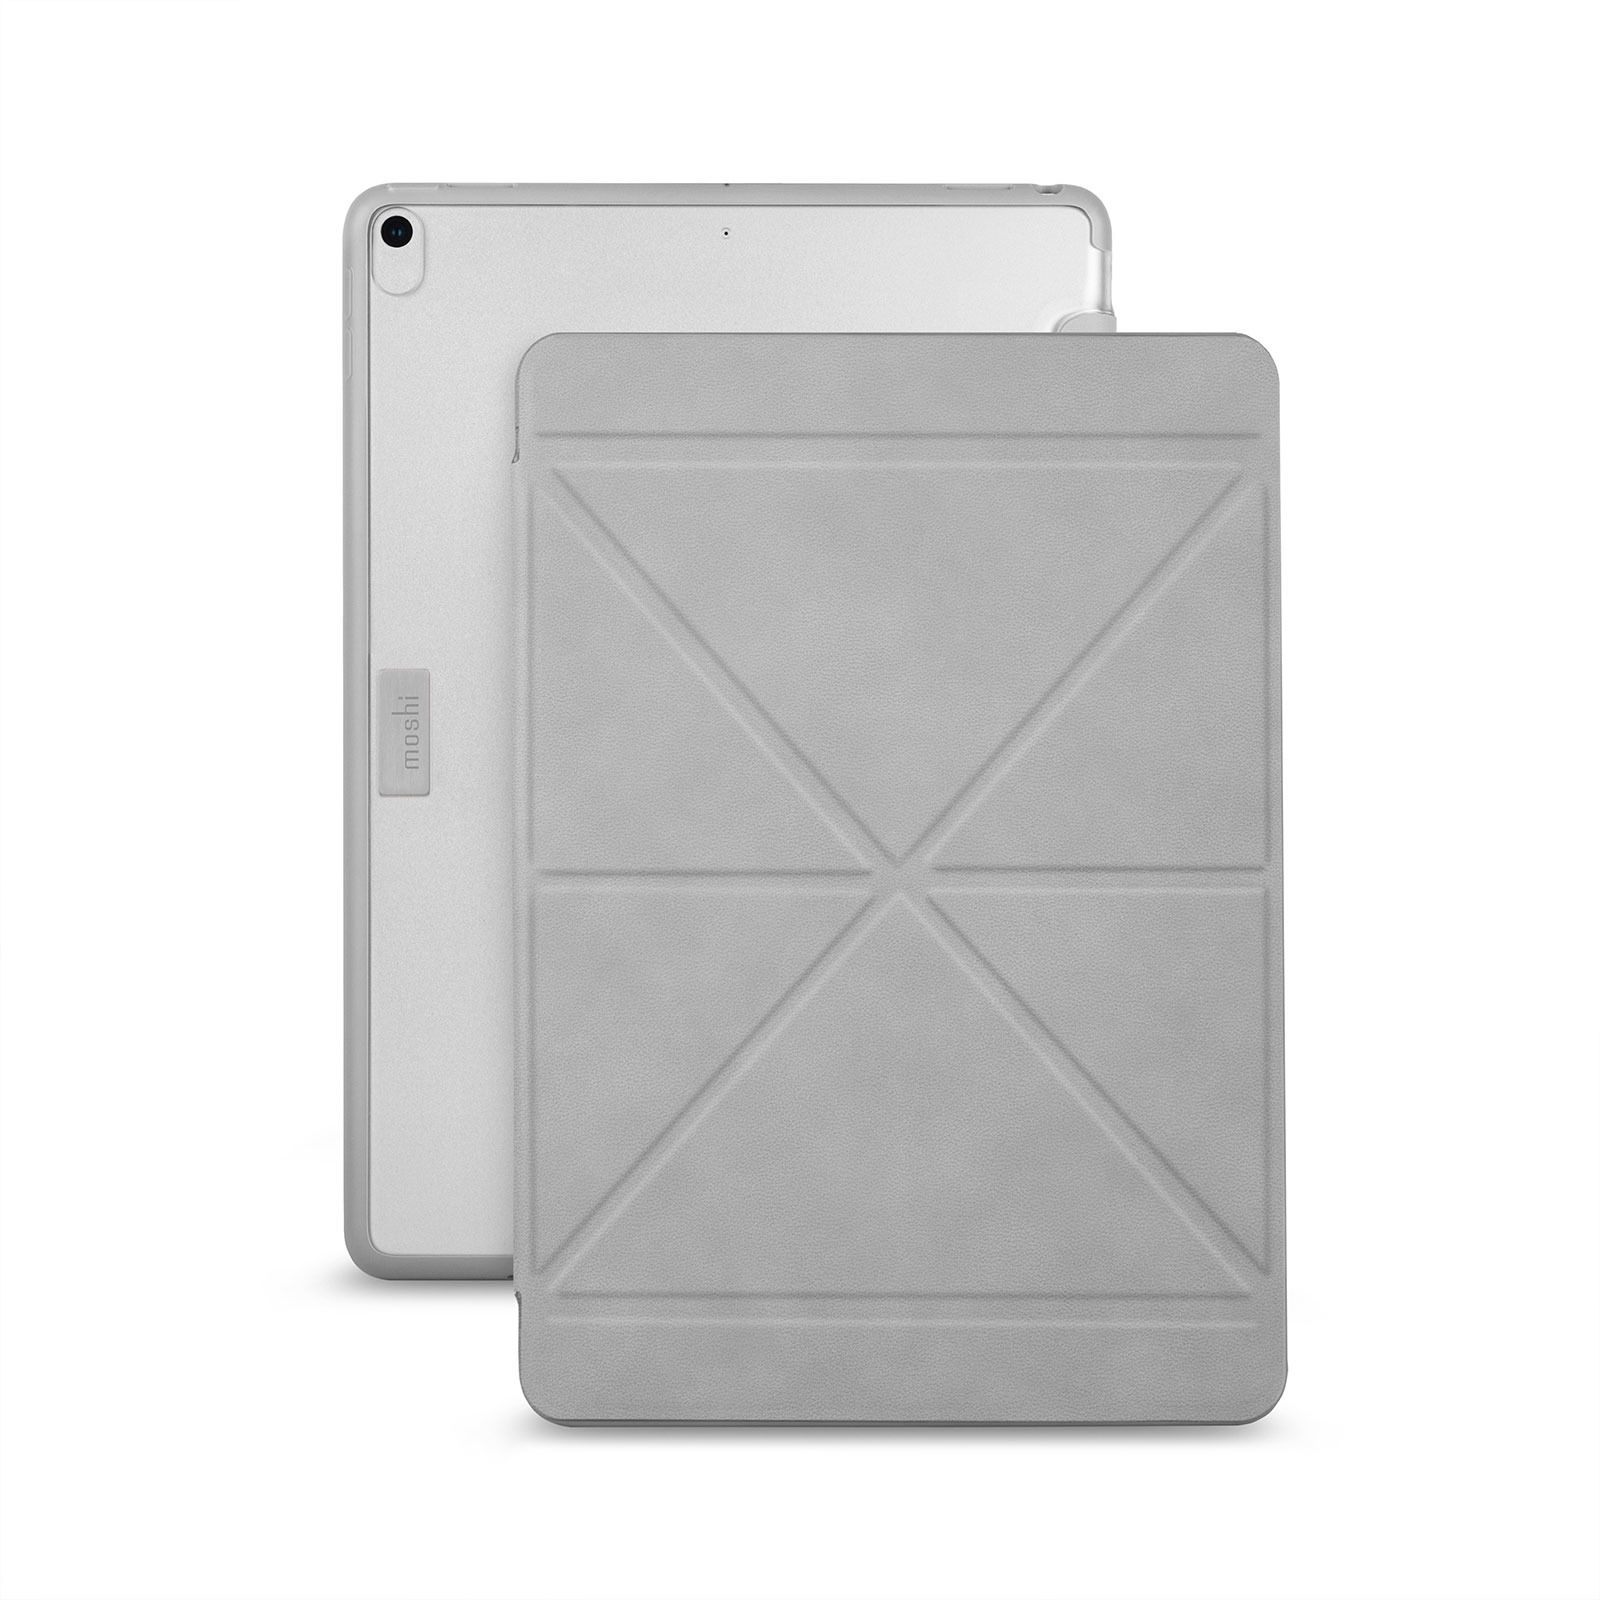 غطاء موشي فيرسكوفر مع غطاء قابل للطي لجهاز iPad Pro / Air (10.5 بوصة) ، رمادي ستون